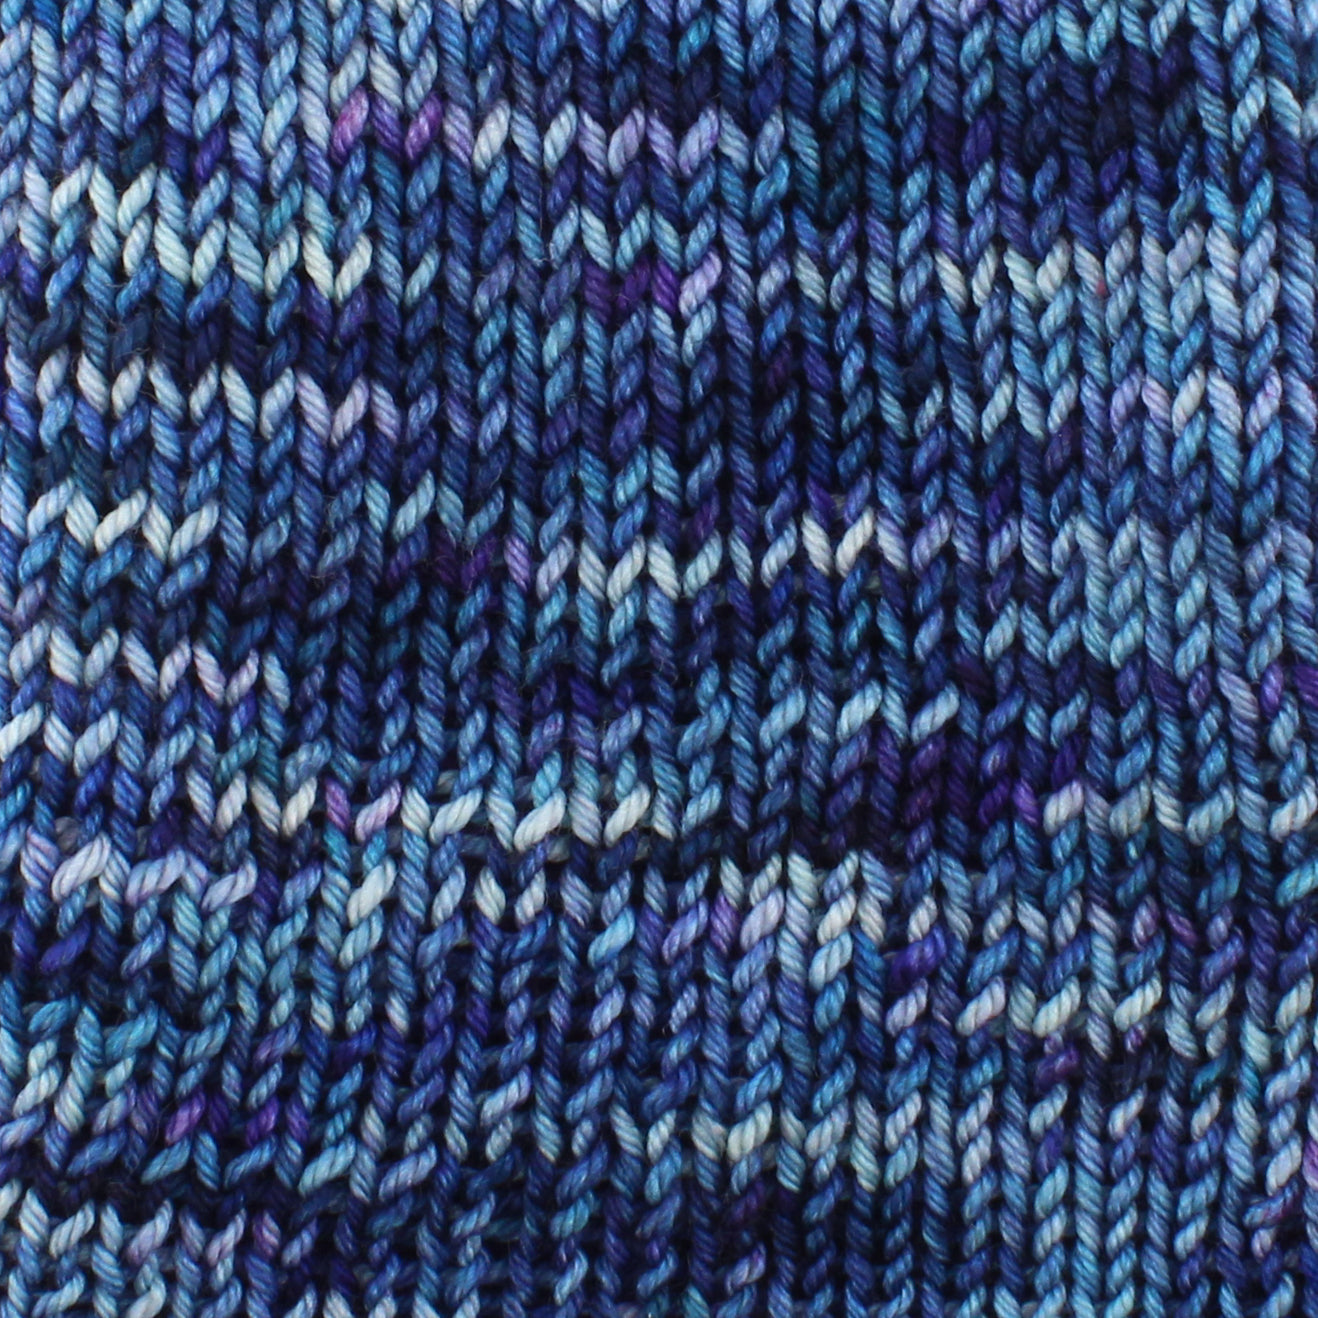 OCEAN AT NIGHT Indie-Dyed Yarn on So Silky Sock